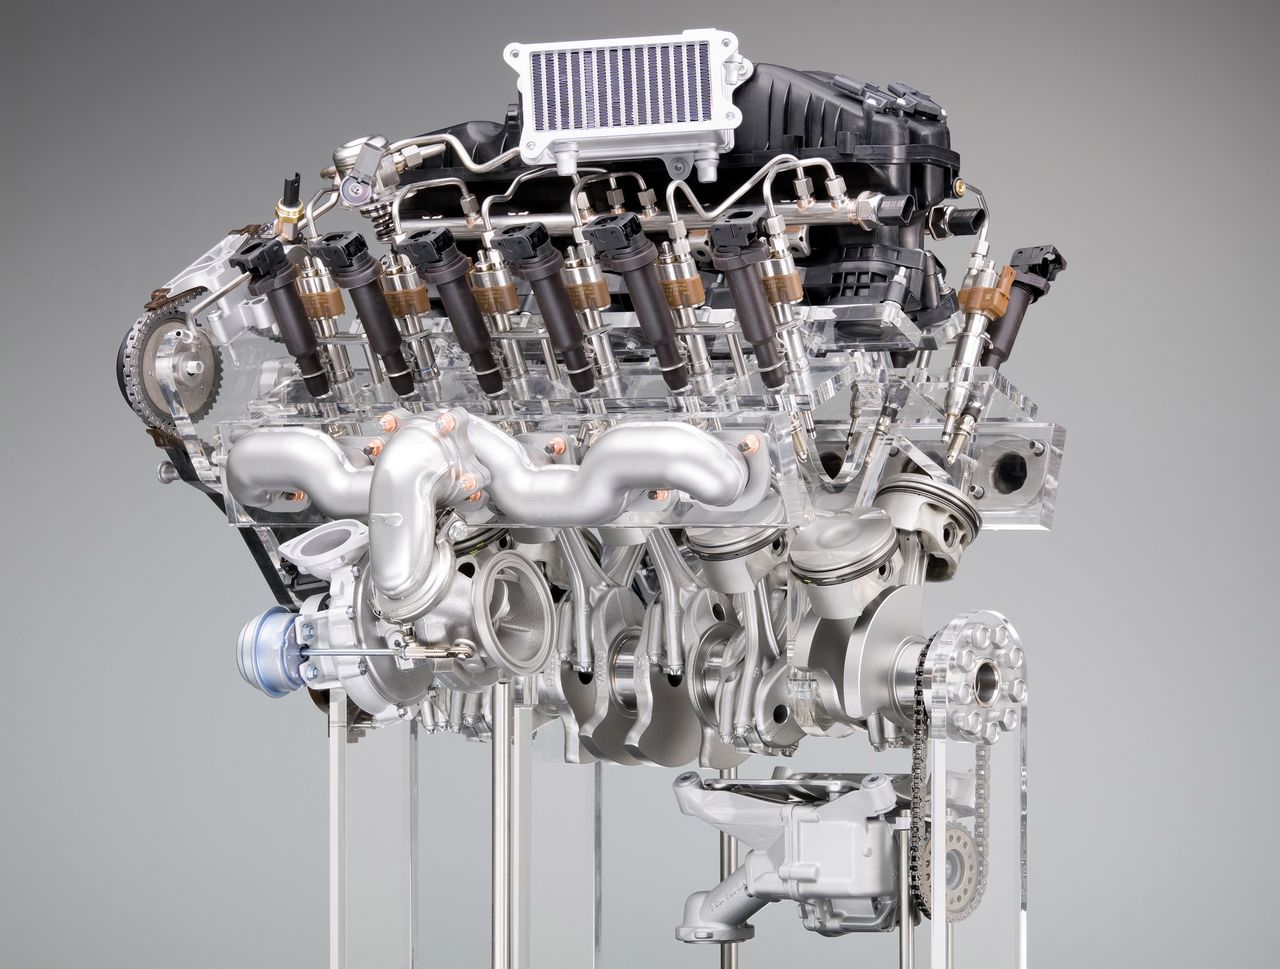 N74 engine in BMW 7 generation F01 (2009)